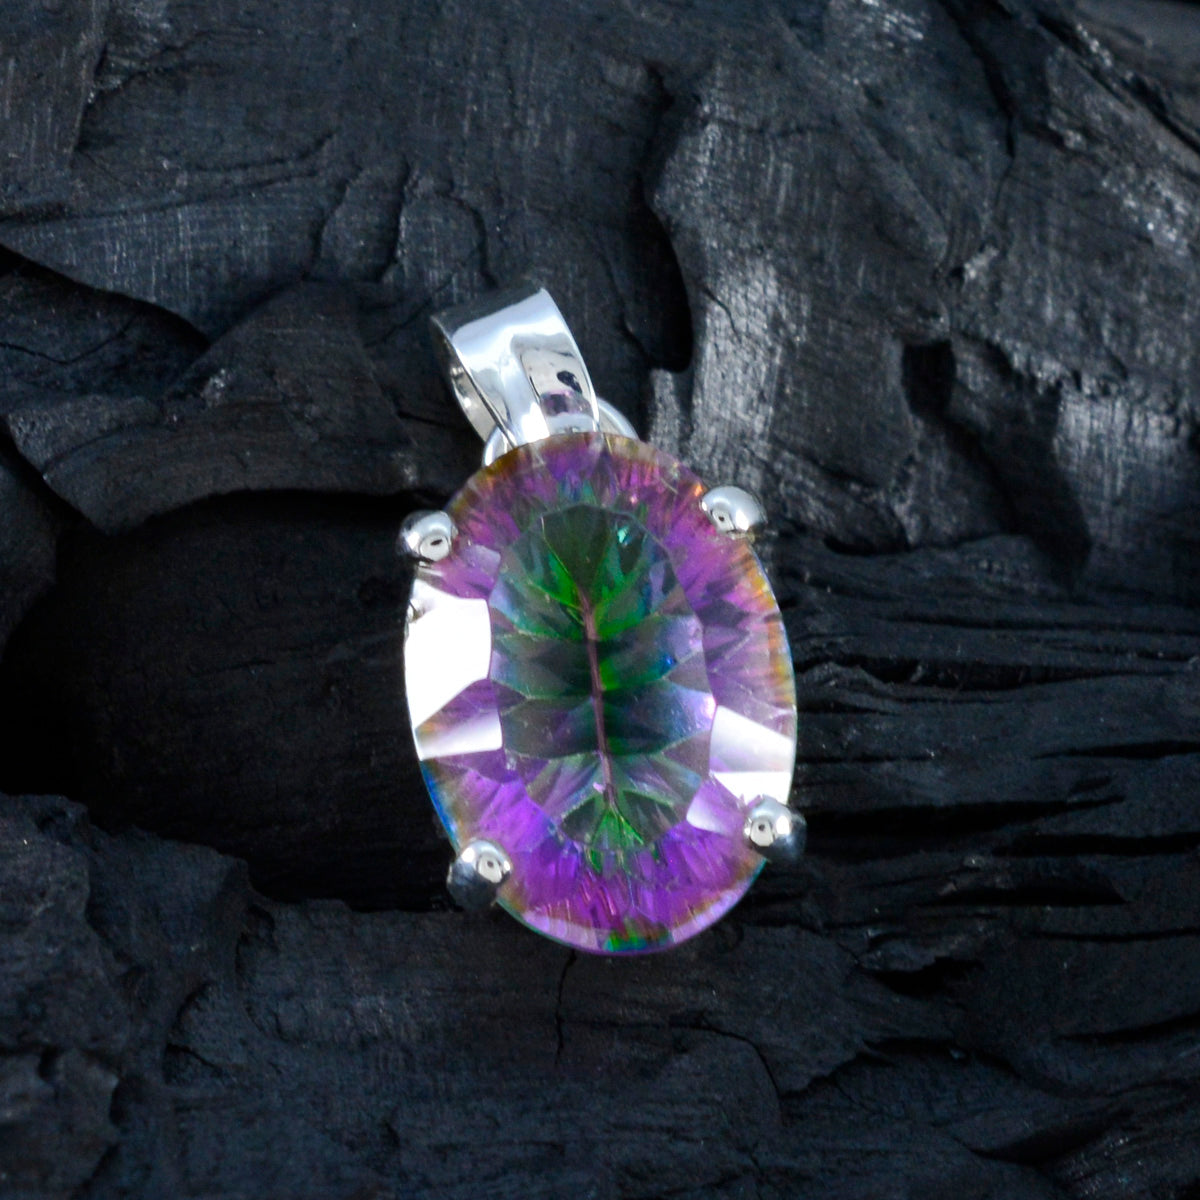 Riyo fit gems ovale à facettes multicolore quartz mystique pendentif en argent cadeau pour femme